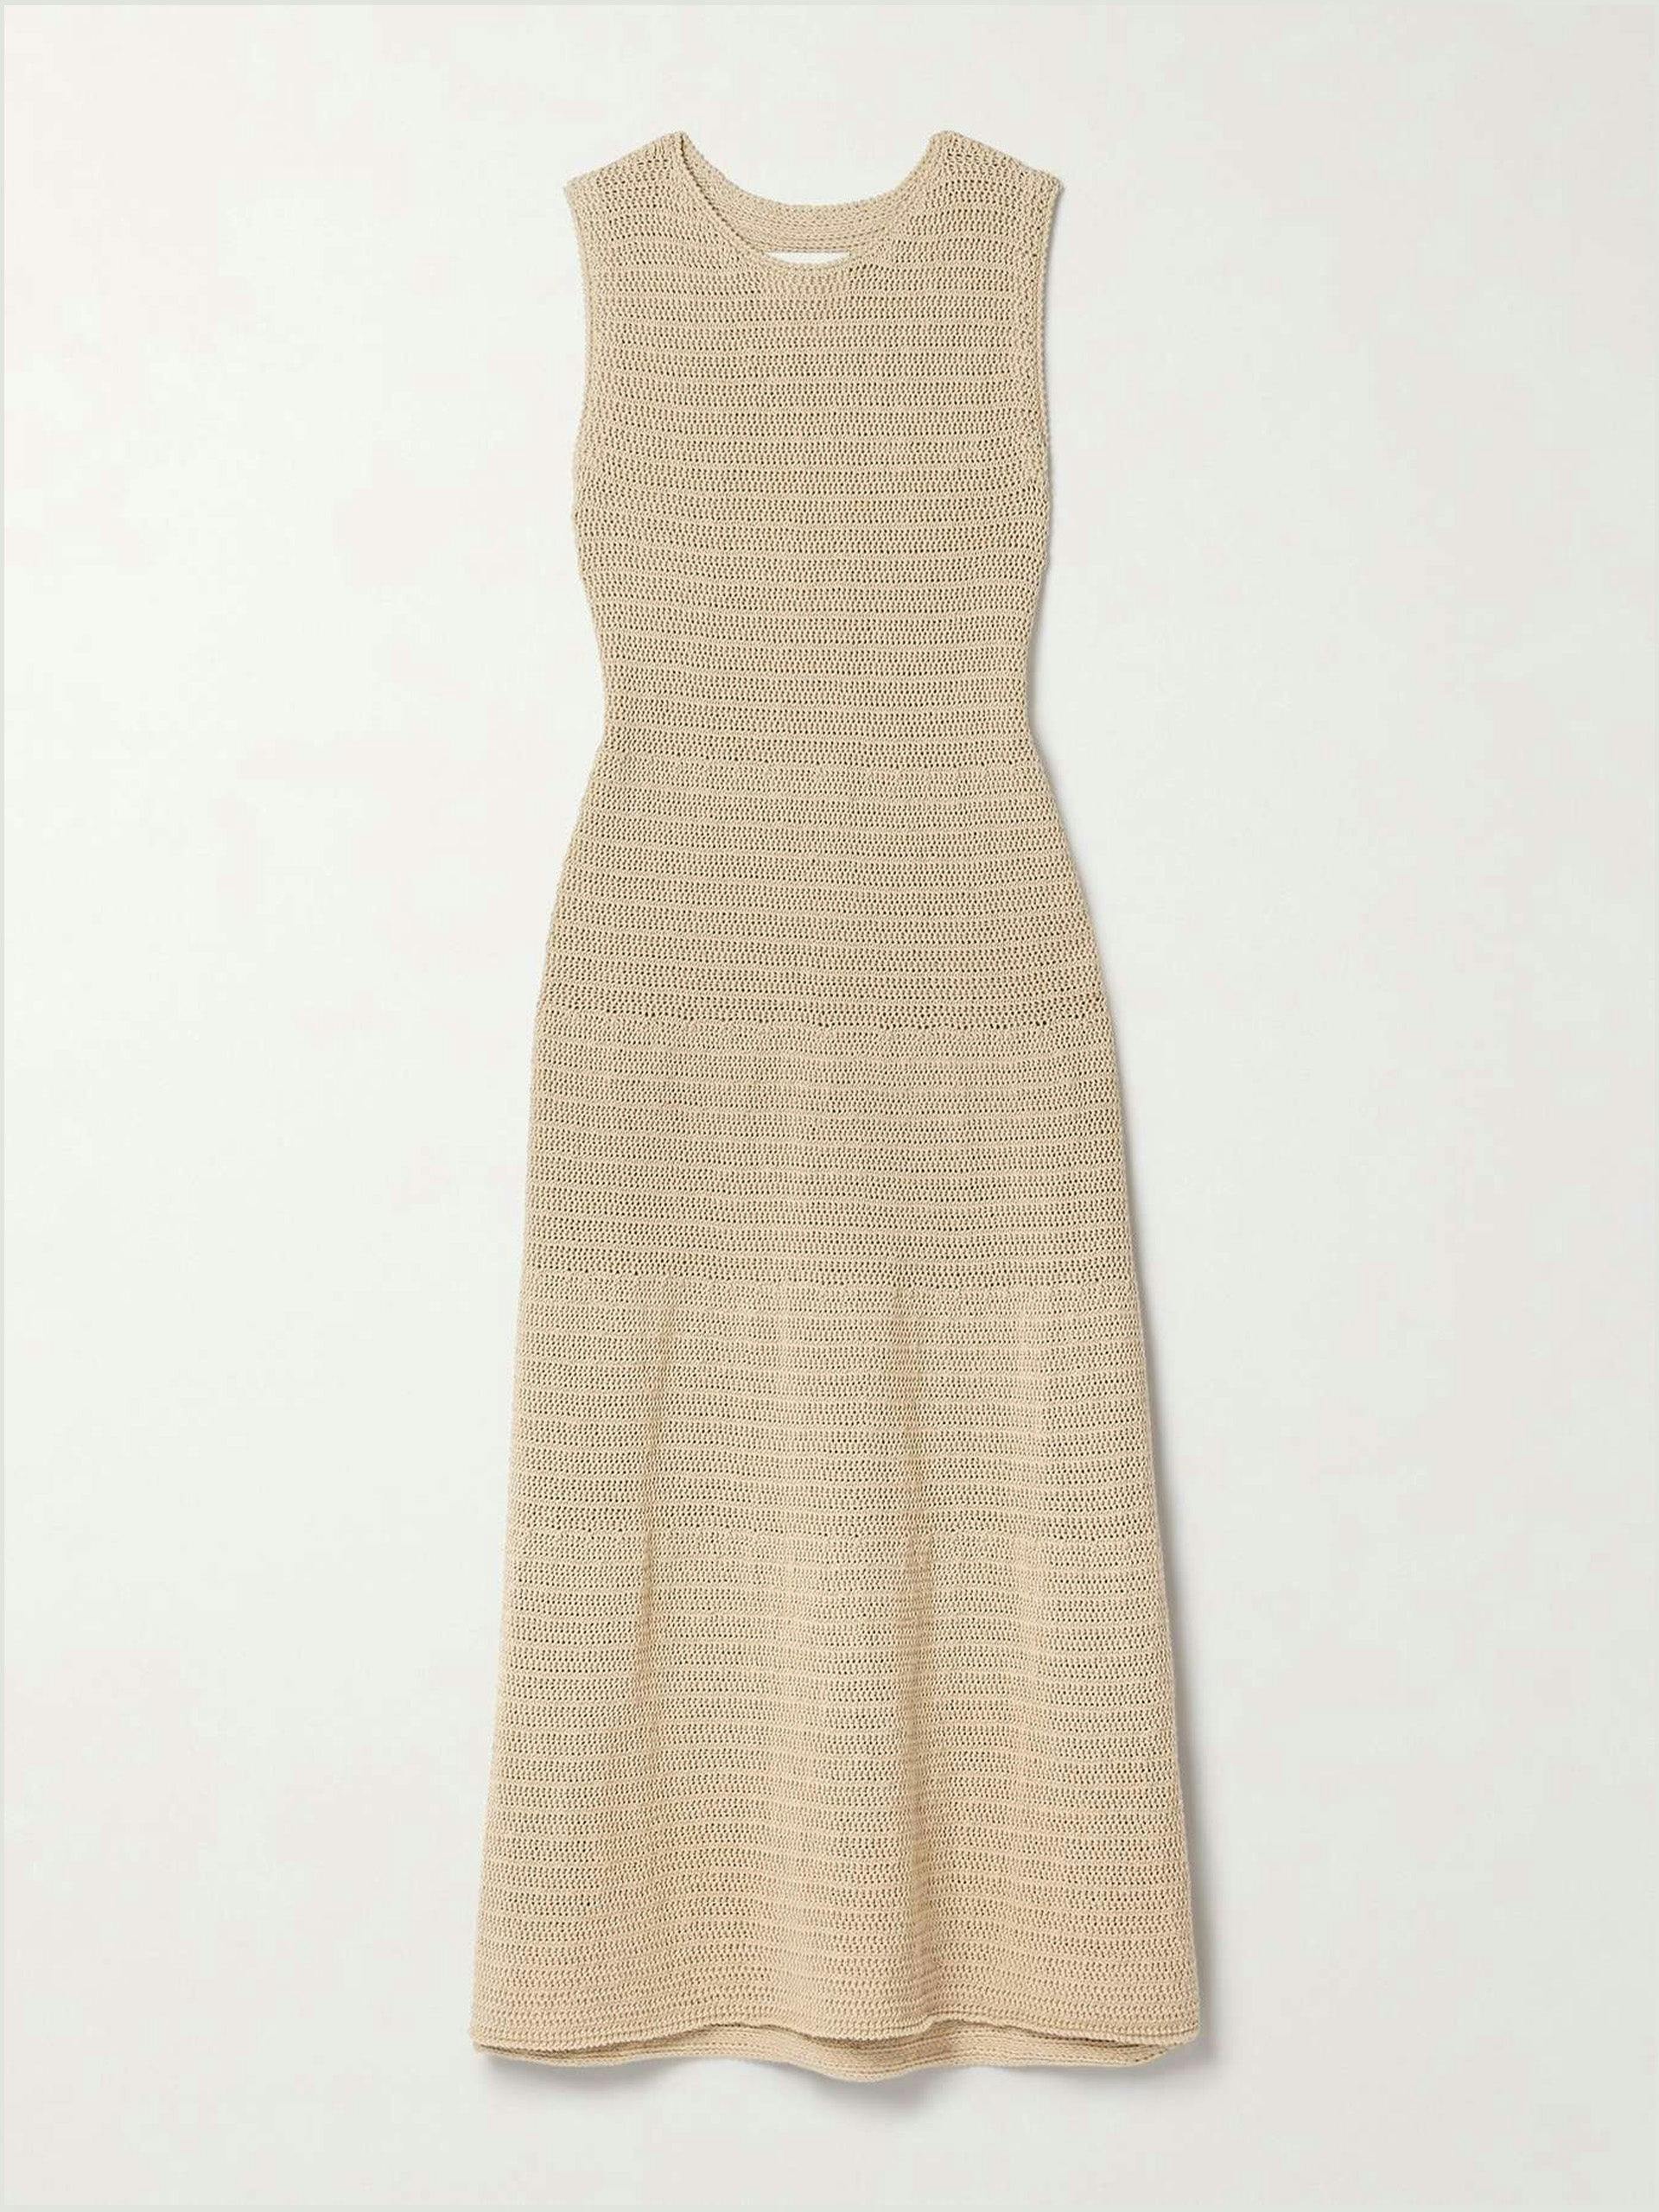 Basket crocheted Pima cotton and linen-blend maxi dress